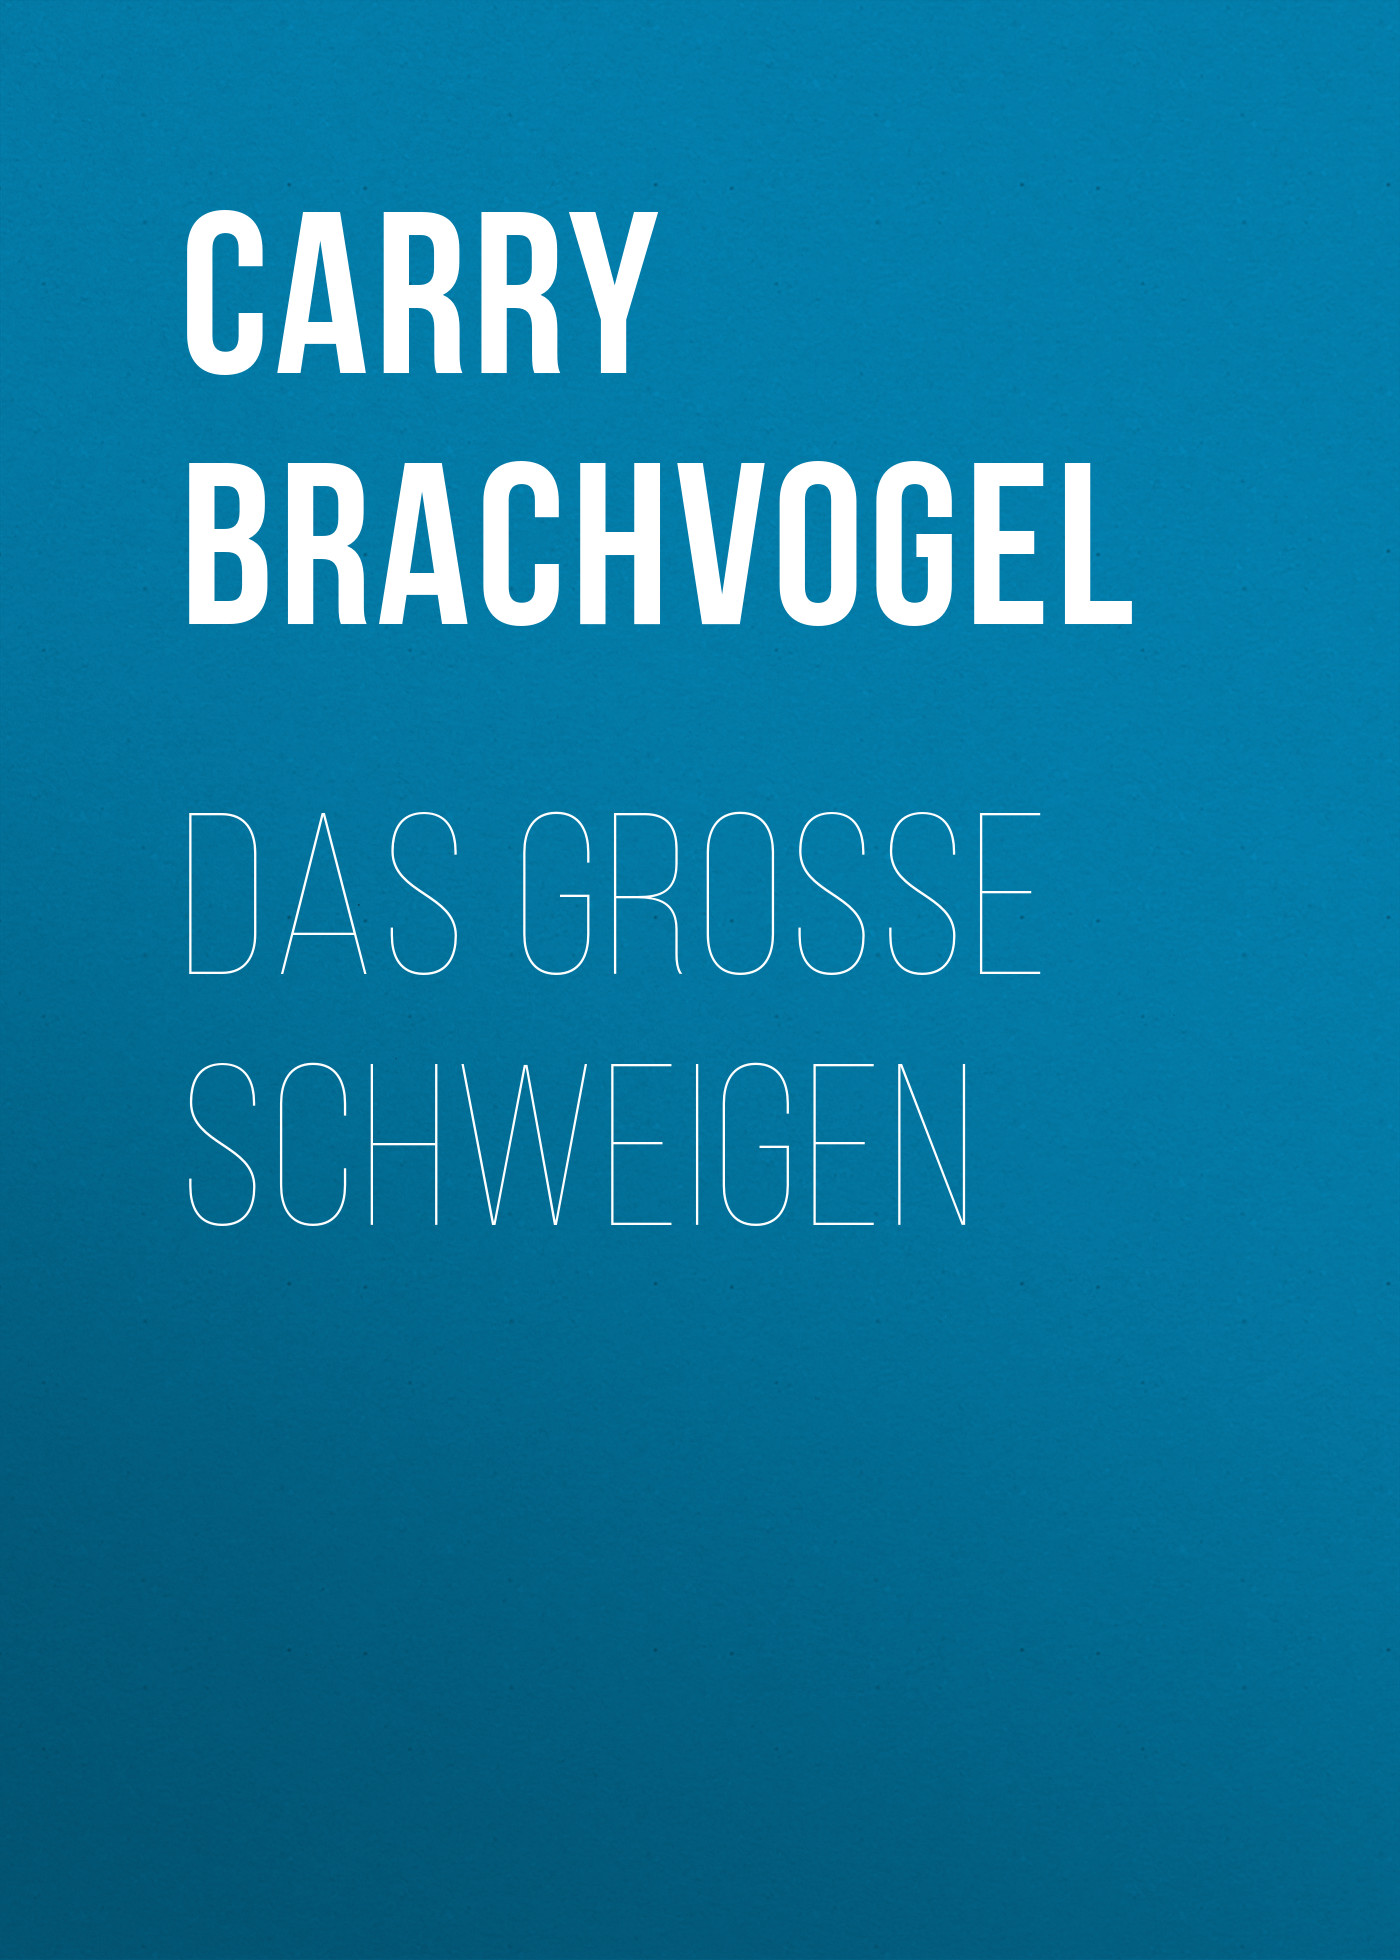 Книга Das große Schweigen из серии , созданная Carry Brachvogel, может относится к жанру Зарубежная классика. Стоимость электронной книги Das große Schweigen с идентификатором 48633052 составляет 0 руб.